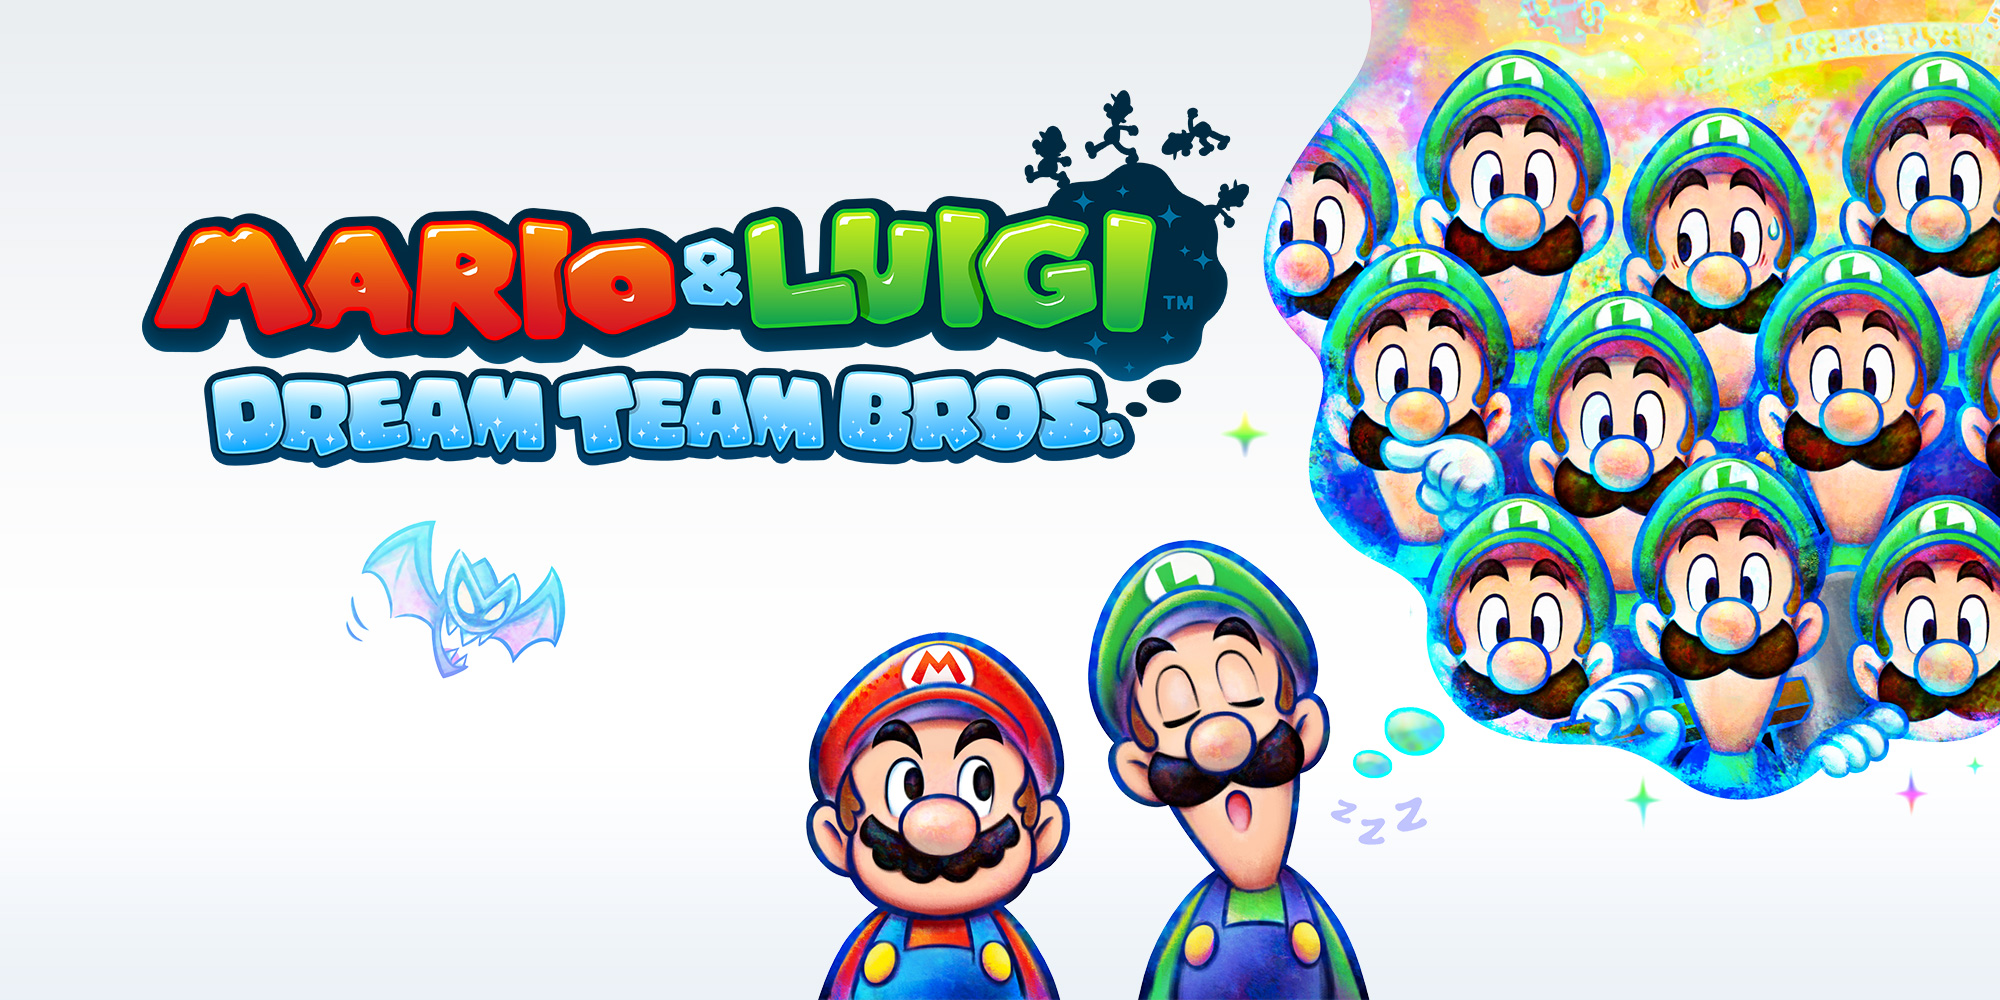 Mario & Luigi: Dream Team Bros. Nintendo 3DS games